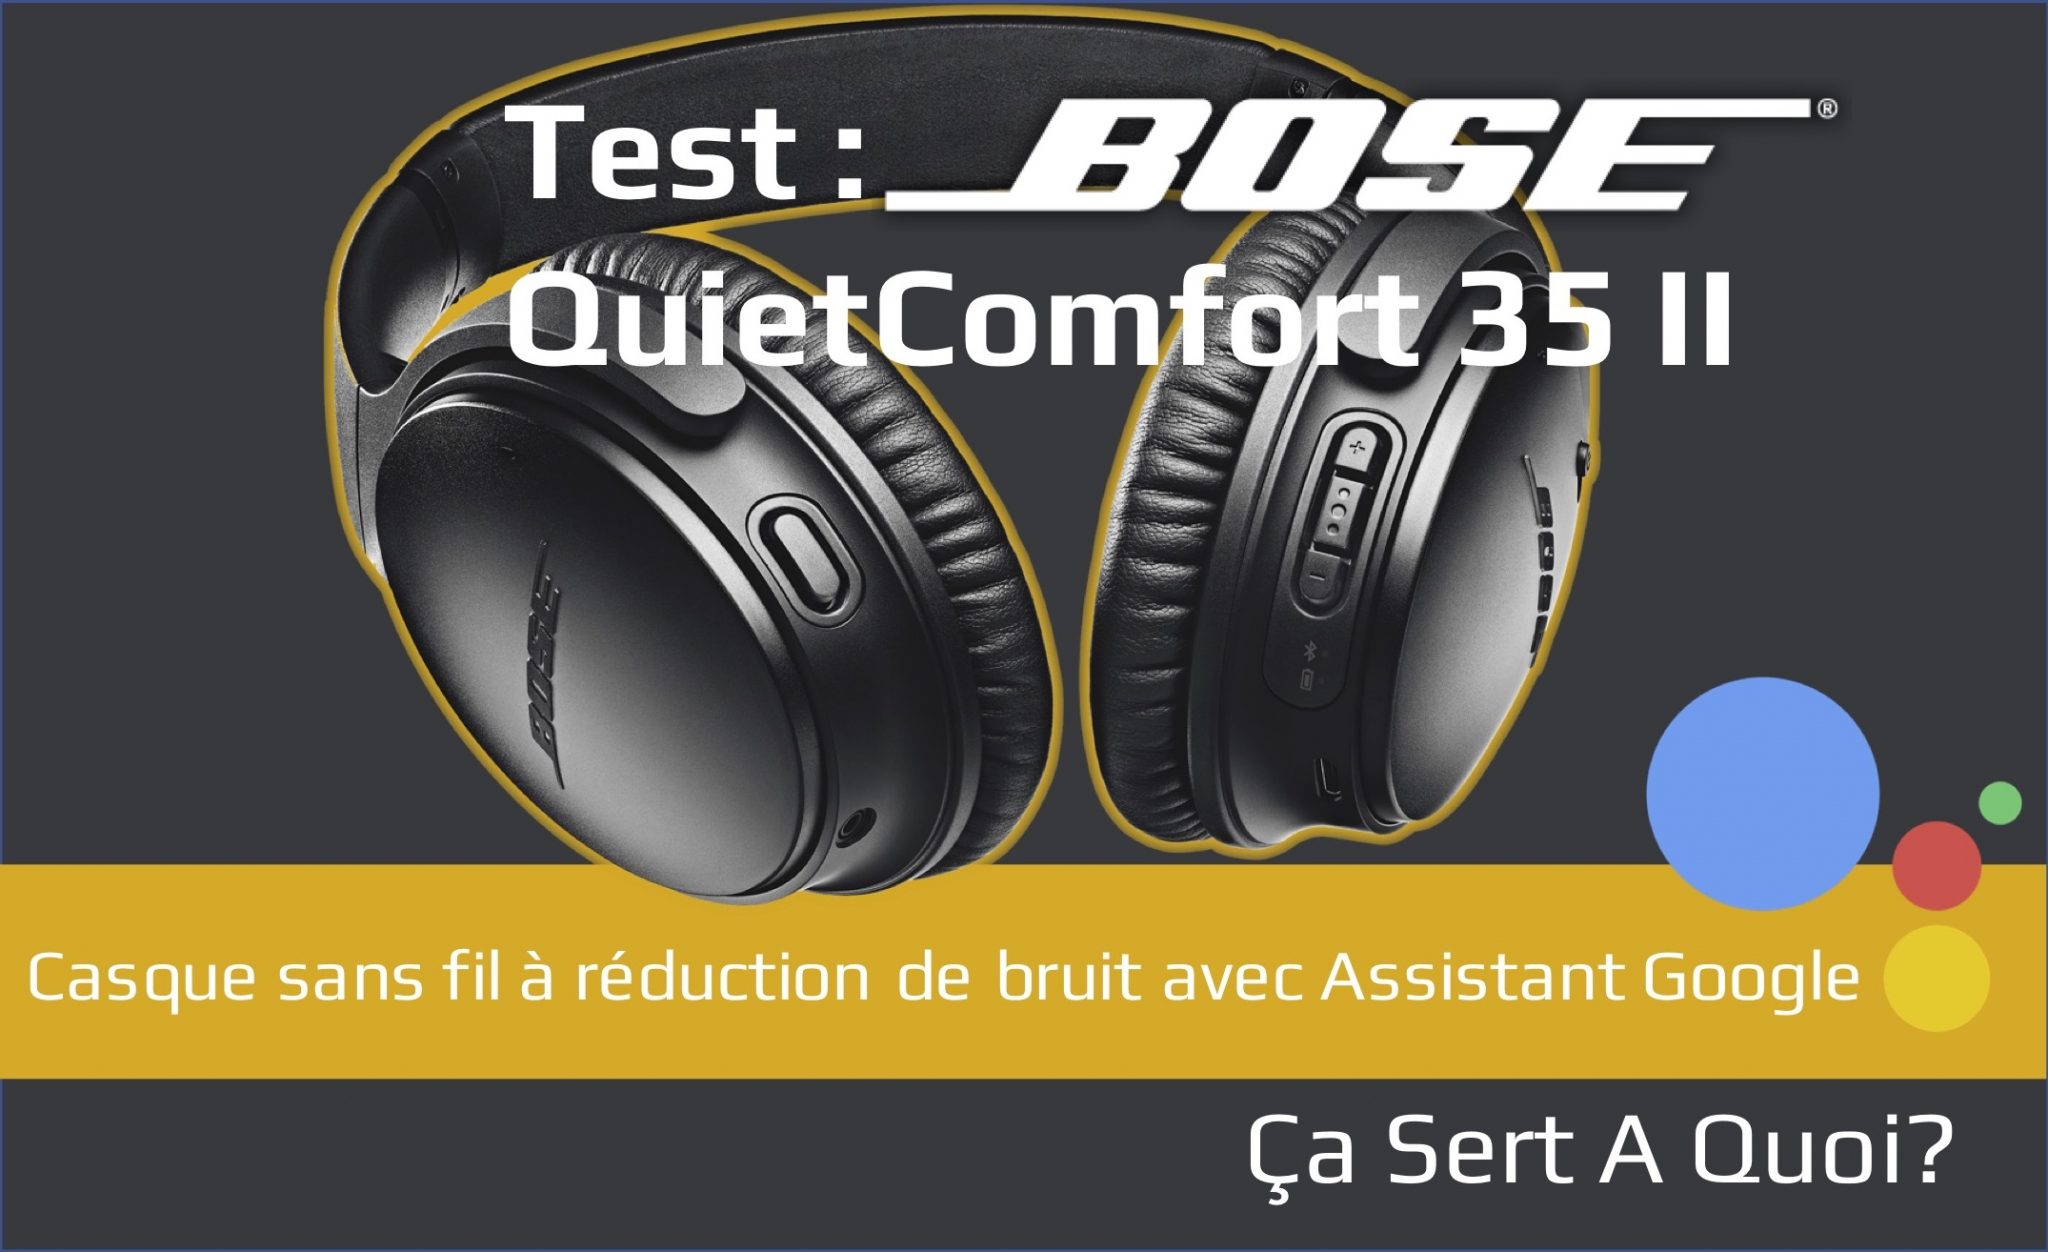 Test du casque bluetooth Bose QuietComfort 35 II avec réduction de